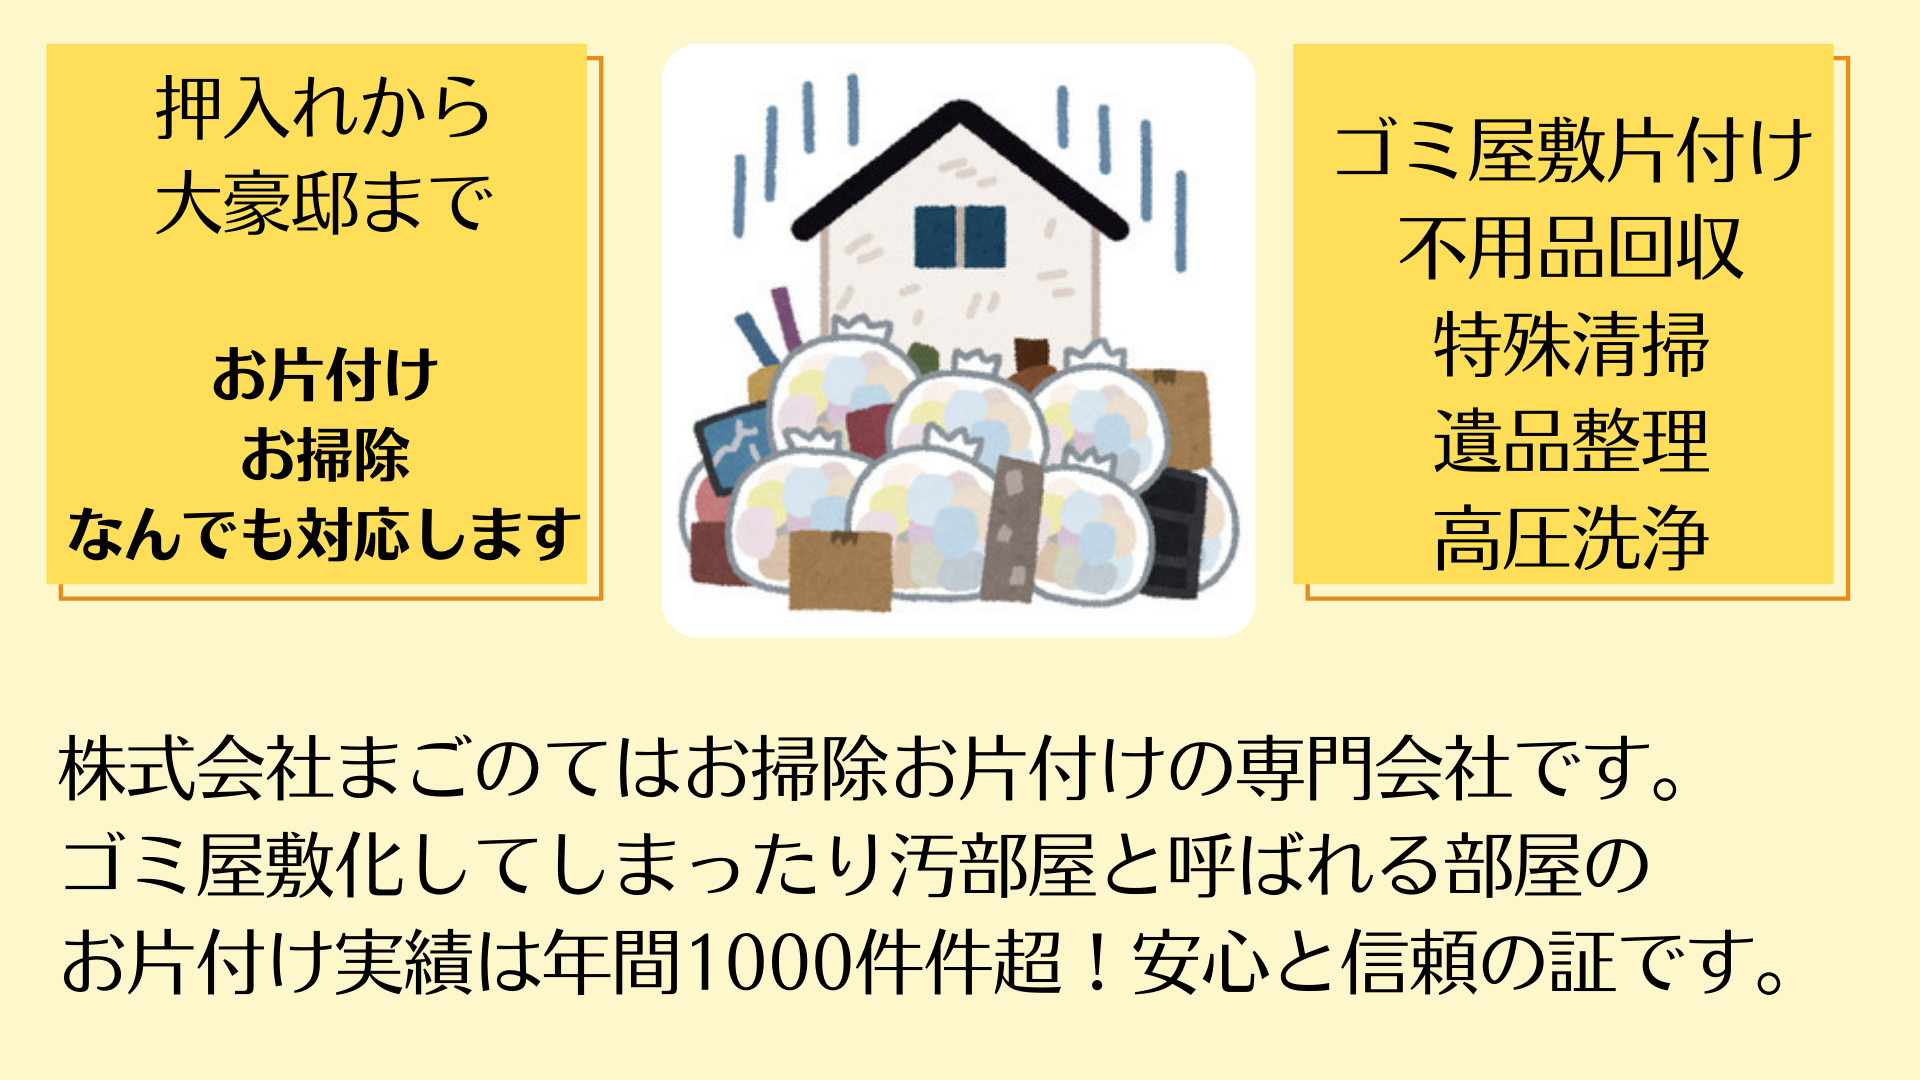 まごのてはゴミ屋敷ゴミ部屋片付け、汚部屋ハウスクリーニングの専門業者です。東京都江戸川区を拠点に東京、埼玉、千葉、神奈川全域で幅広くサービス提供を行っています。ゴミ屋敷ゴミ部屋の規模は問わず押入れから1ルームマンションの小規模から2LDK3LDKのファミリーマンションのゴミ部屋、豪邸のような一軒家や倉庫などのお片付けも大歓迎です。